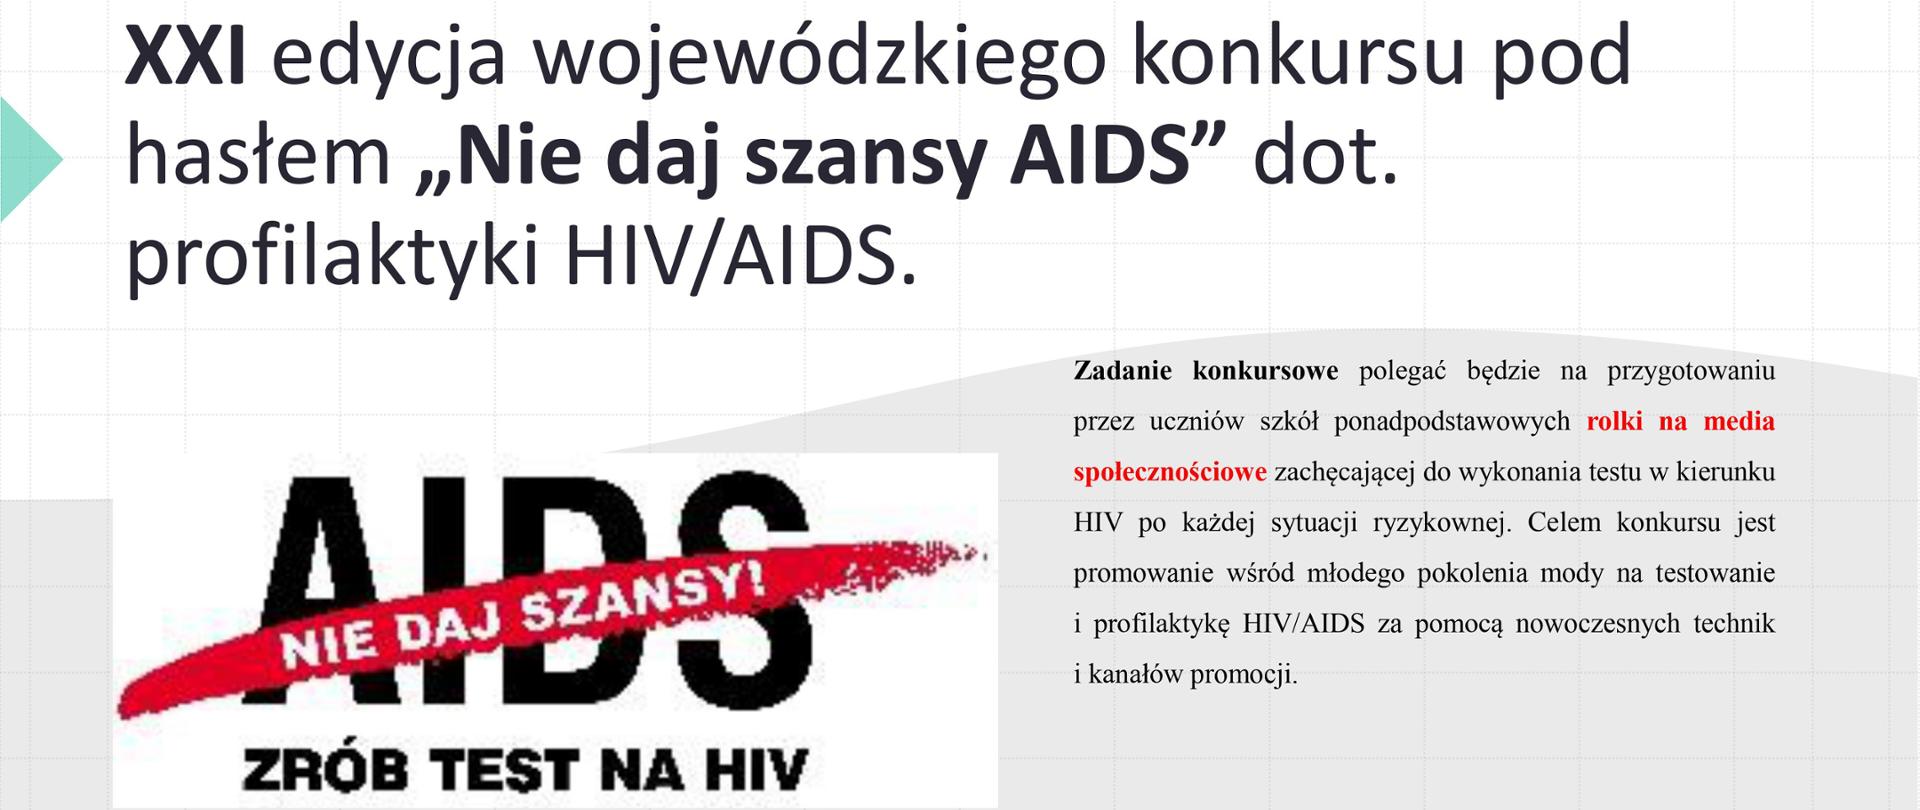 plakat przedstawiający kolejną edycję wojewódzkiego konkursu pt. ,, Nie daj szansy AIDS"